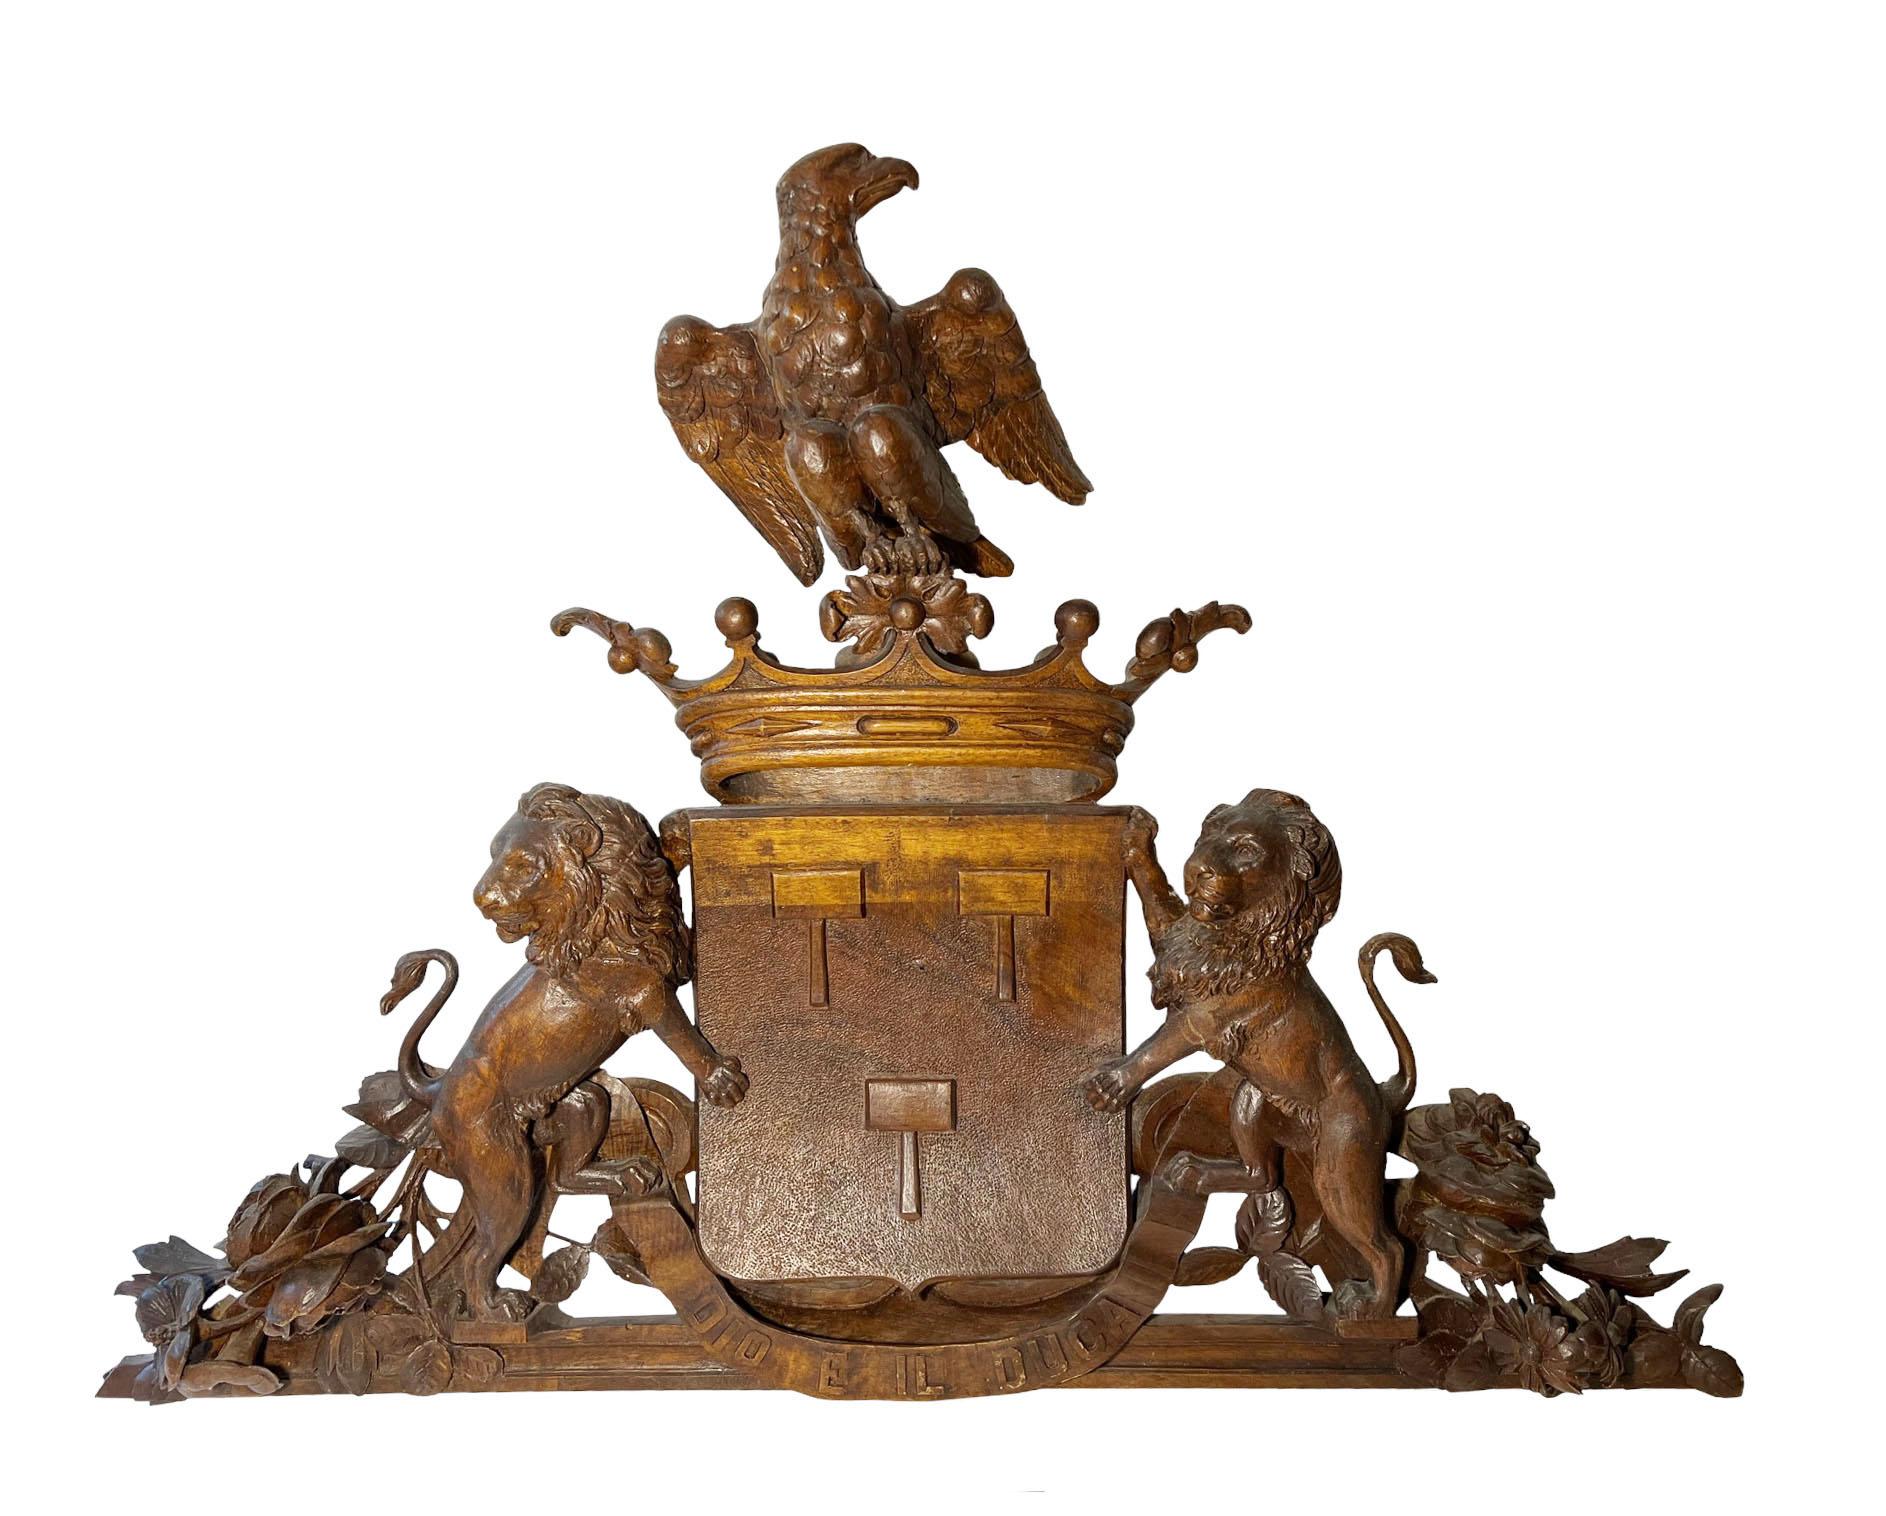 Ein Paar italienische, handgeschnitzte Wappen aus dem 19. Jahrhundert, Giebel mit Kronen, Adlern und Löwen. Die Schnitzereien sind wunderschön ausgeführt. Jeder Giebel zeigt eine einzigartige Königskrone und ein darunter geschnitztes Schild. Ein